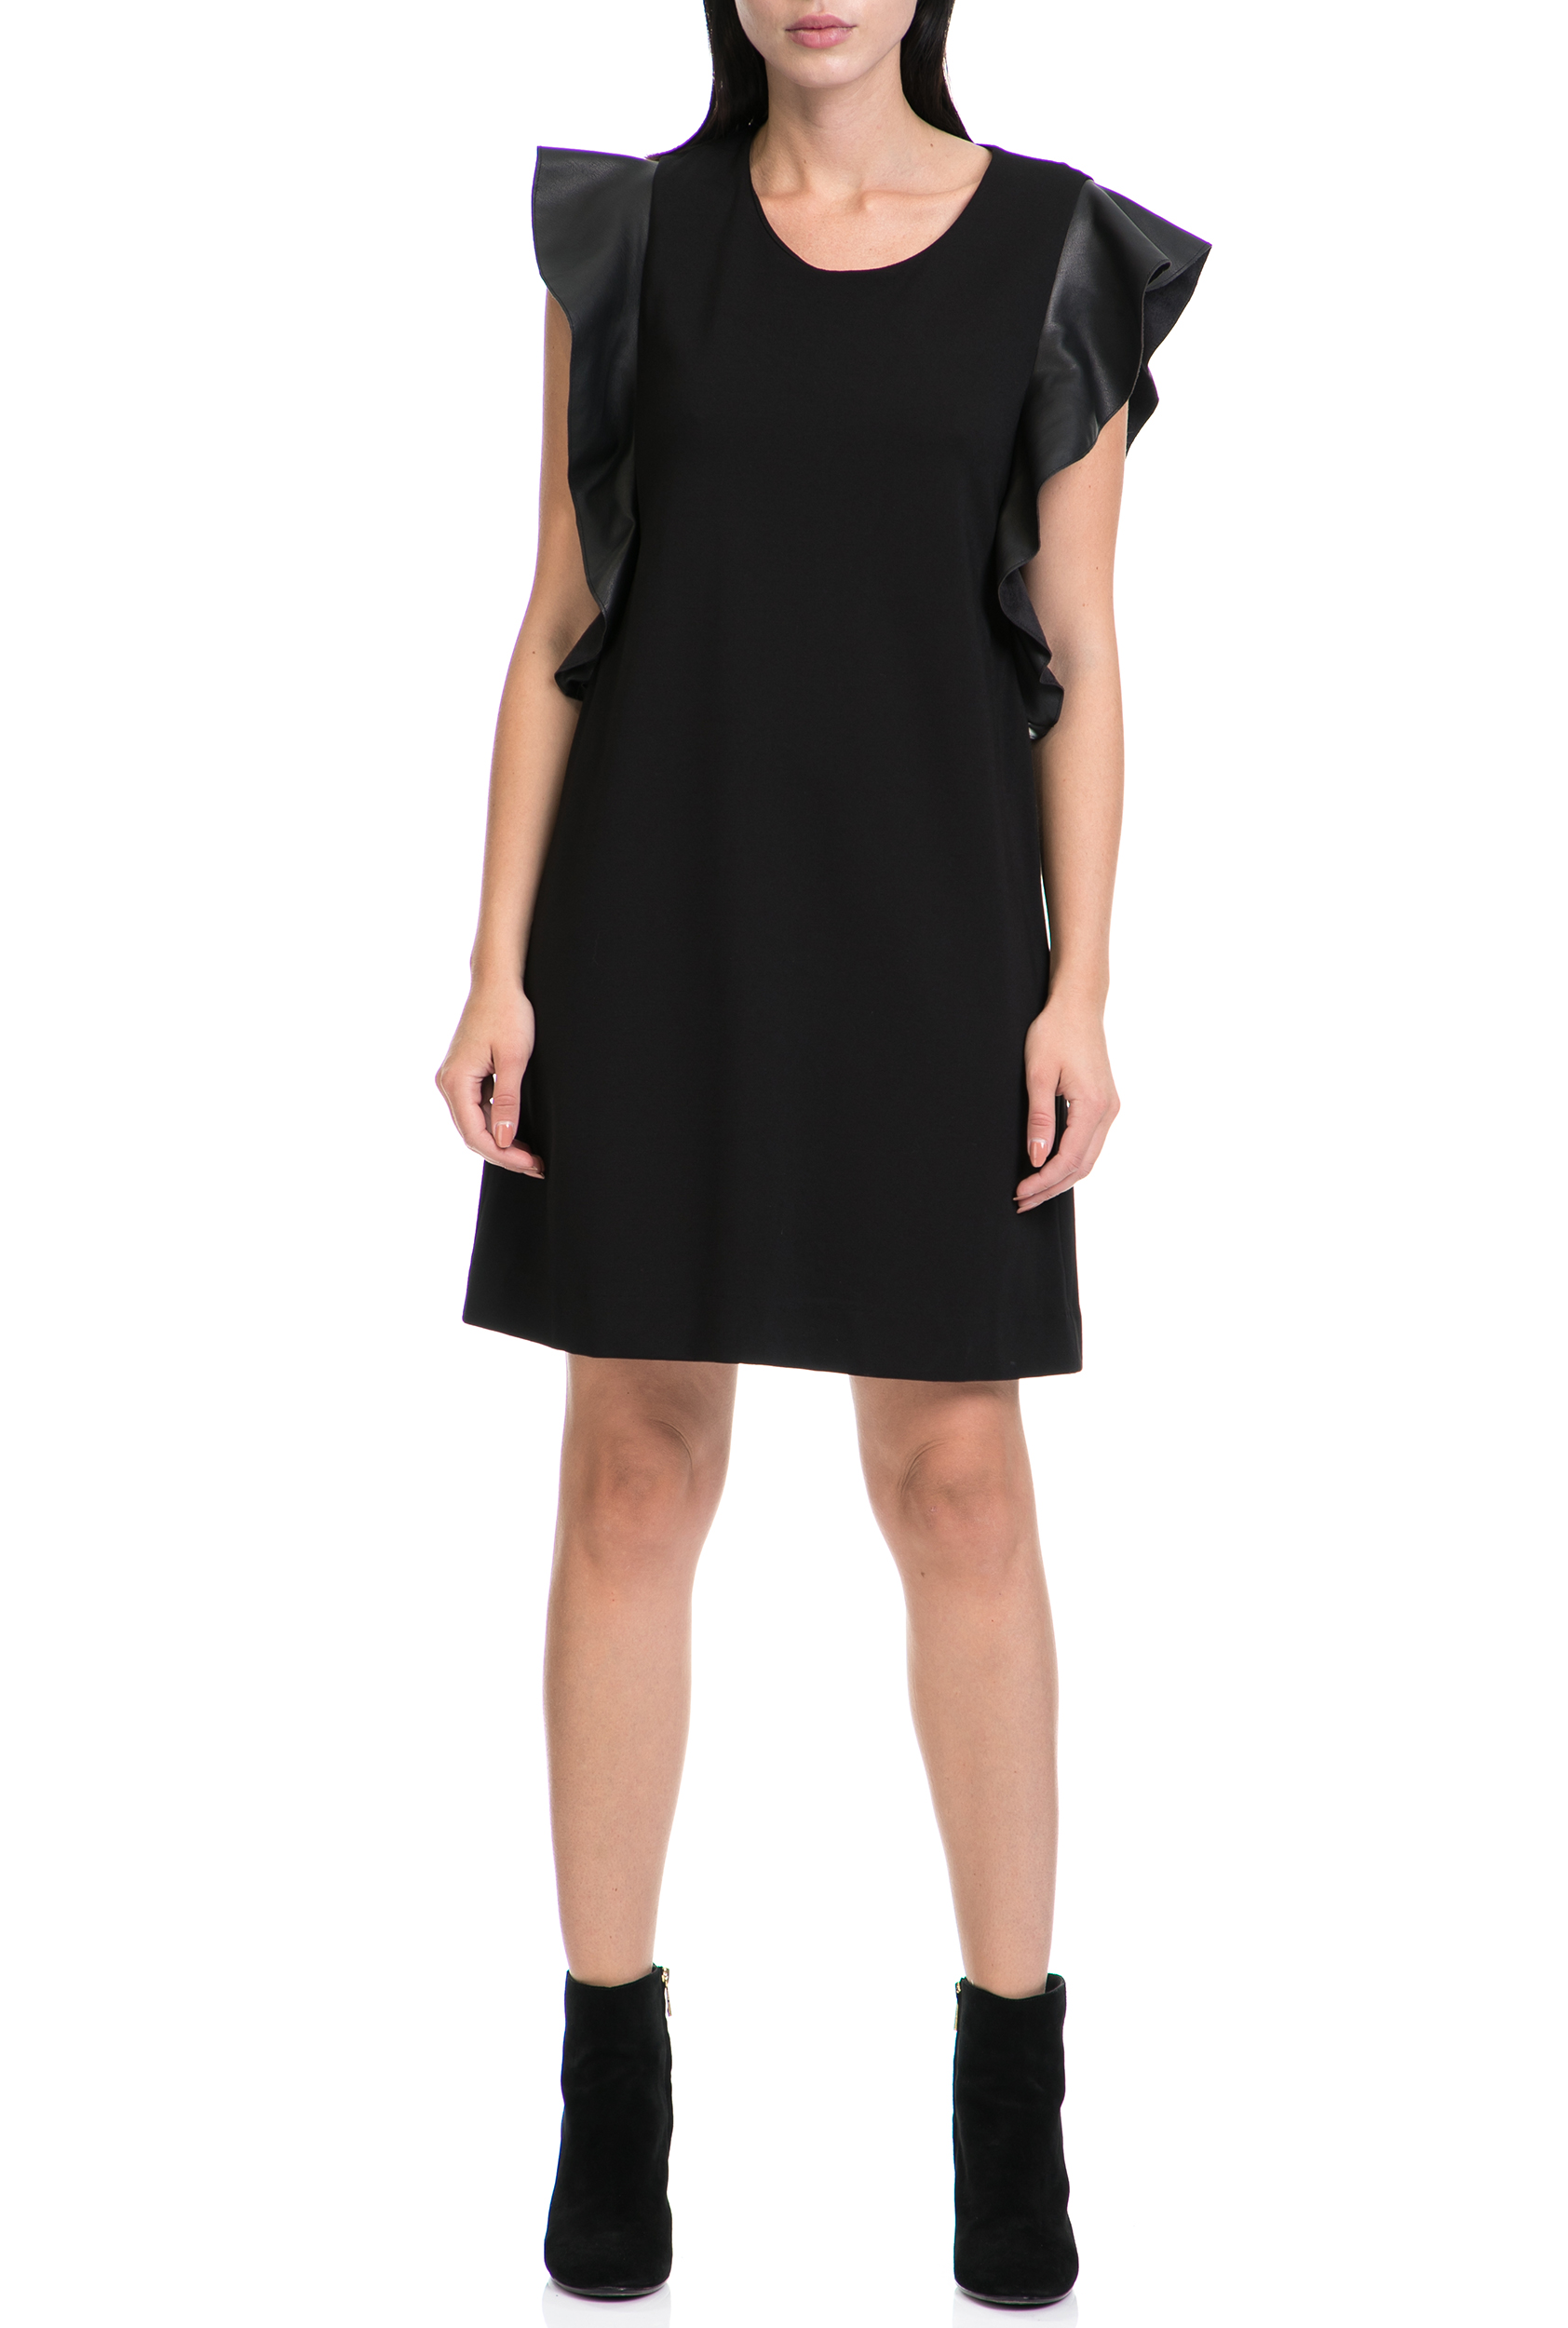 Γυναικεία/Ρούχα/Φόρεματα/Μίνι GAS - Γυναικείο φόρεμα ROSES GAS μαύρο